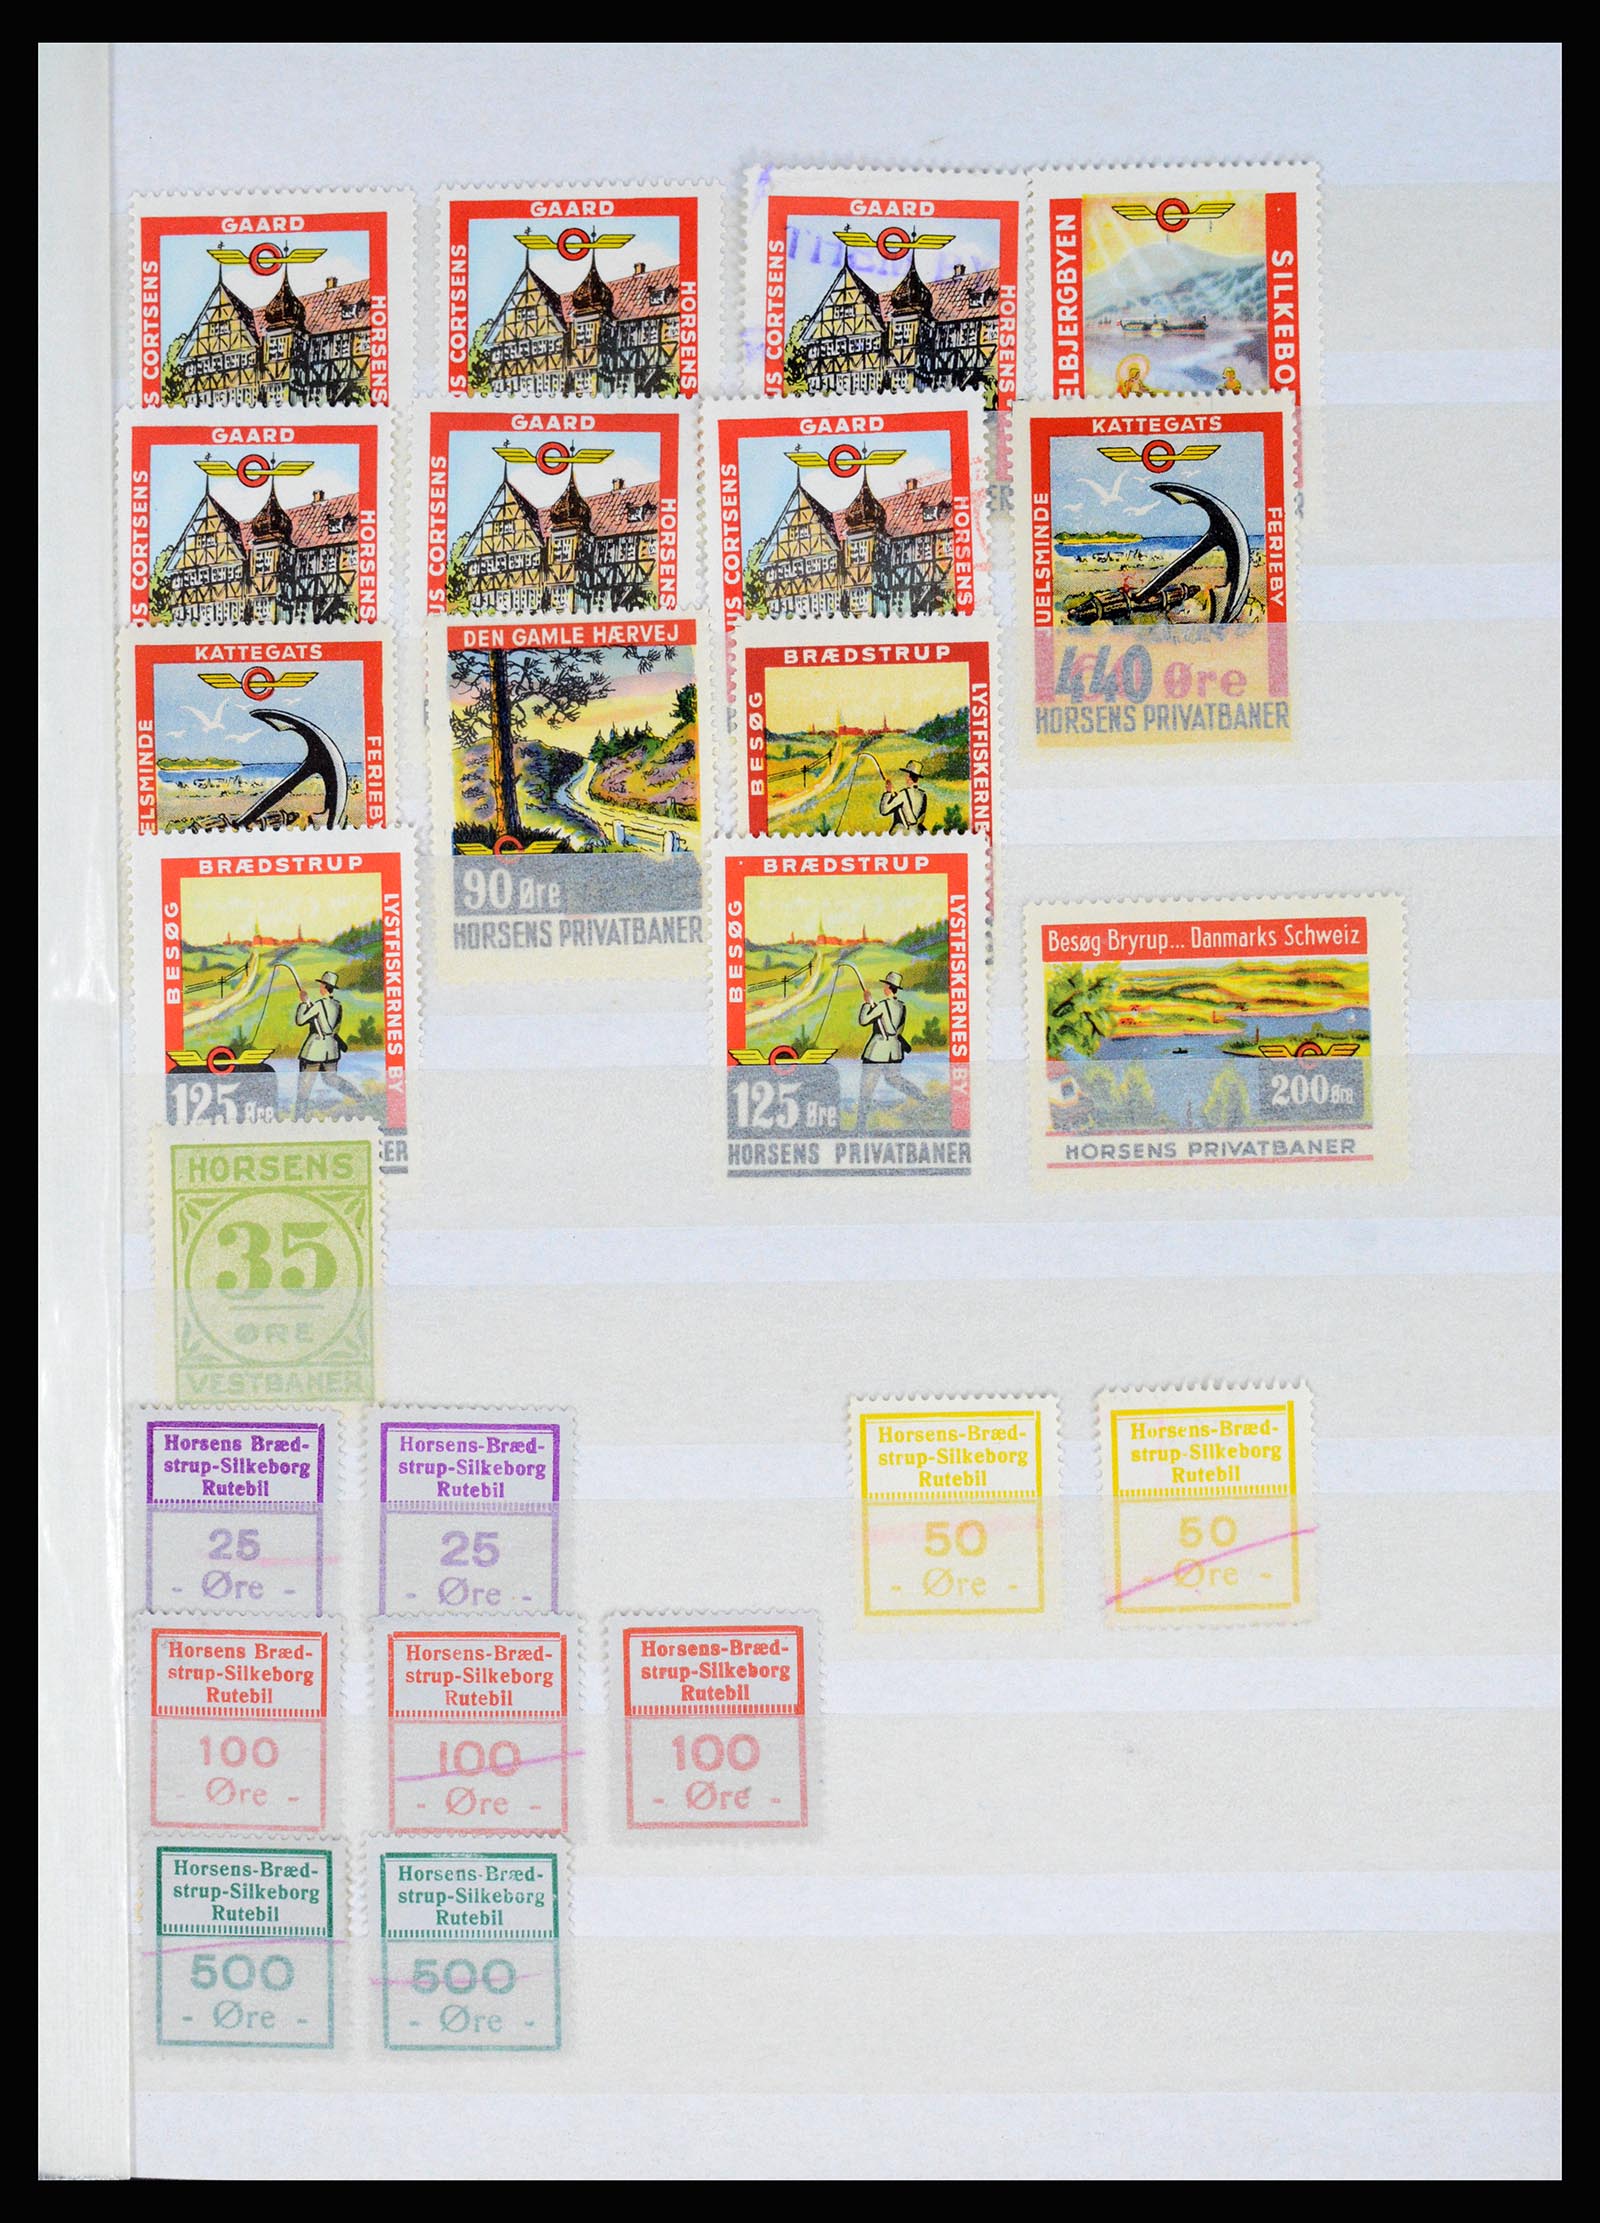 36982 029 - Postzegelverzameling 36982 Denemarken spoorwegzegels.